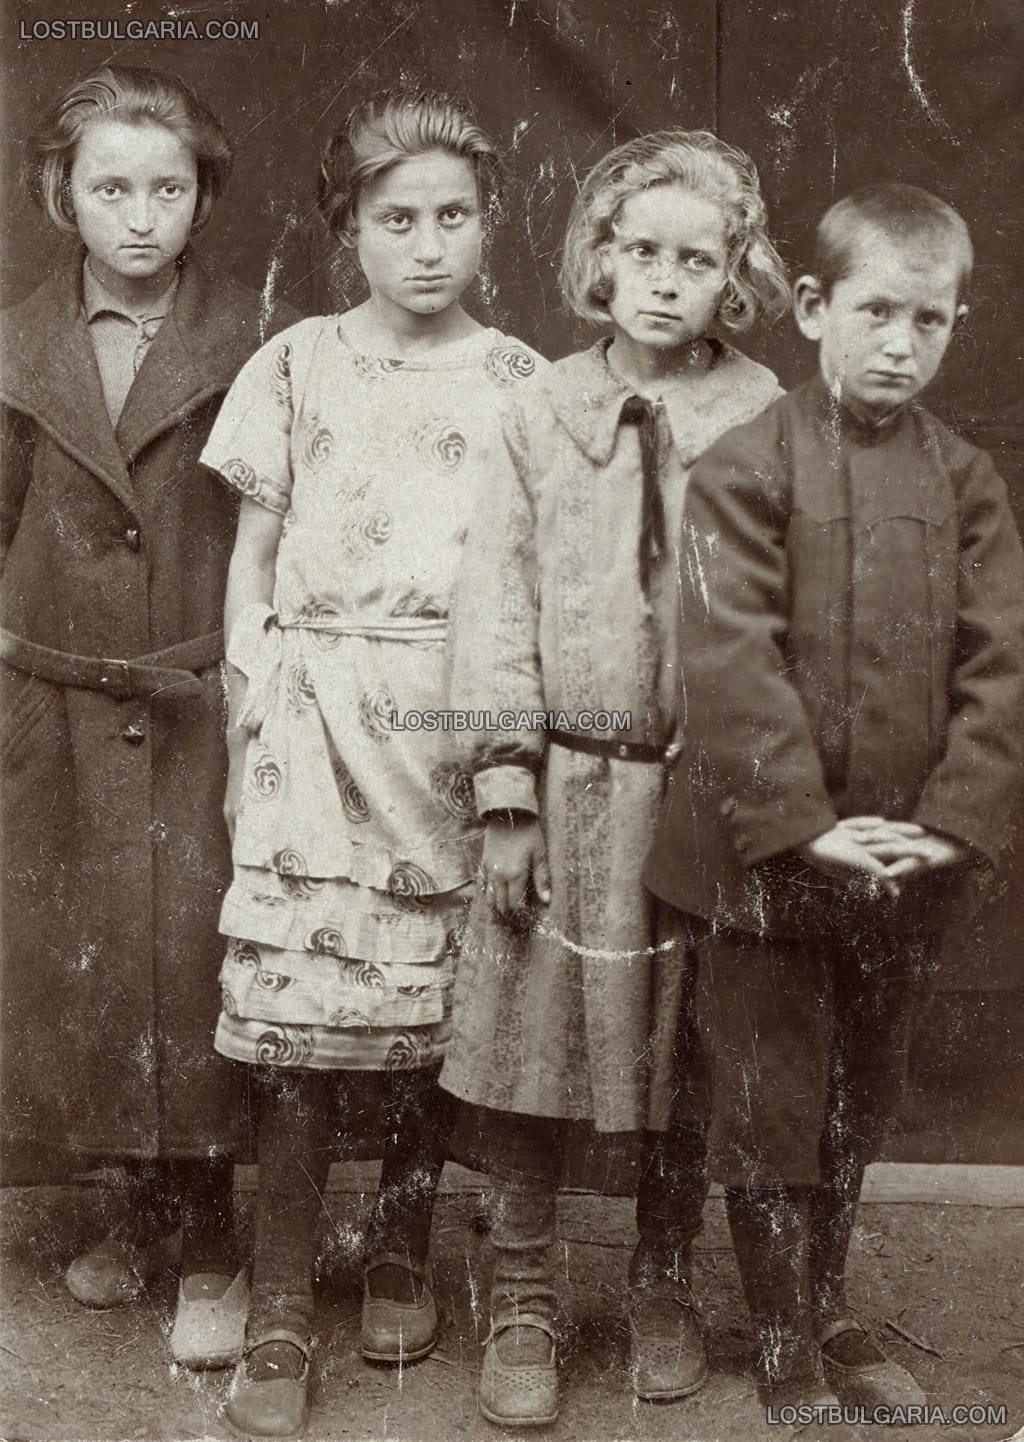 Портрет на четири неизвестни деца, вероятно началото на 20-те години на ХХ век